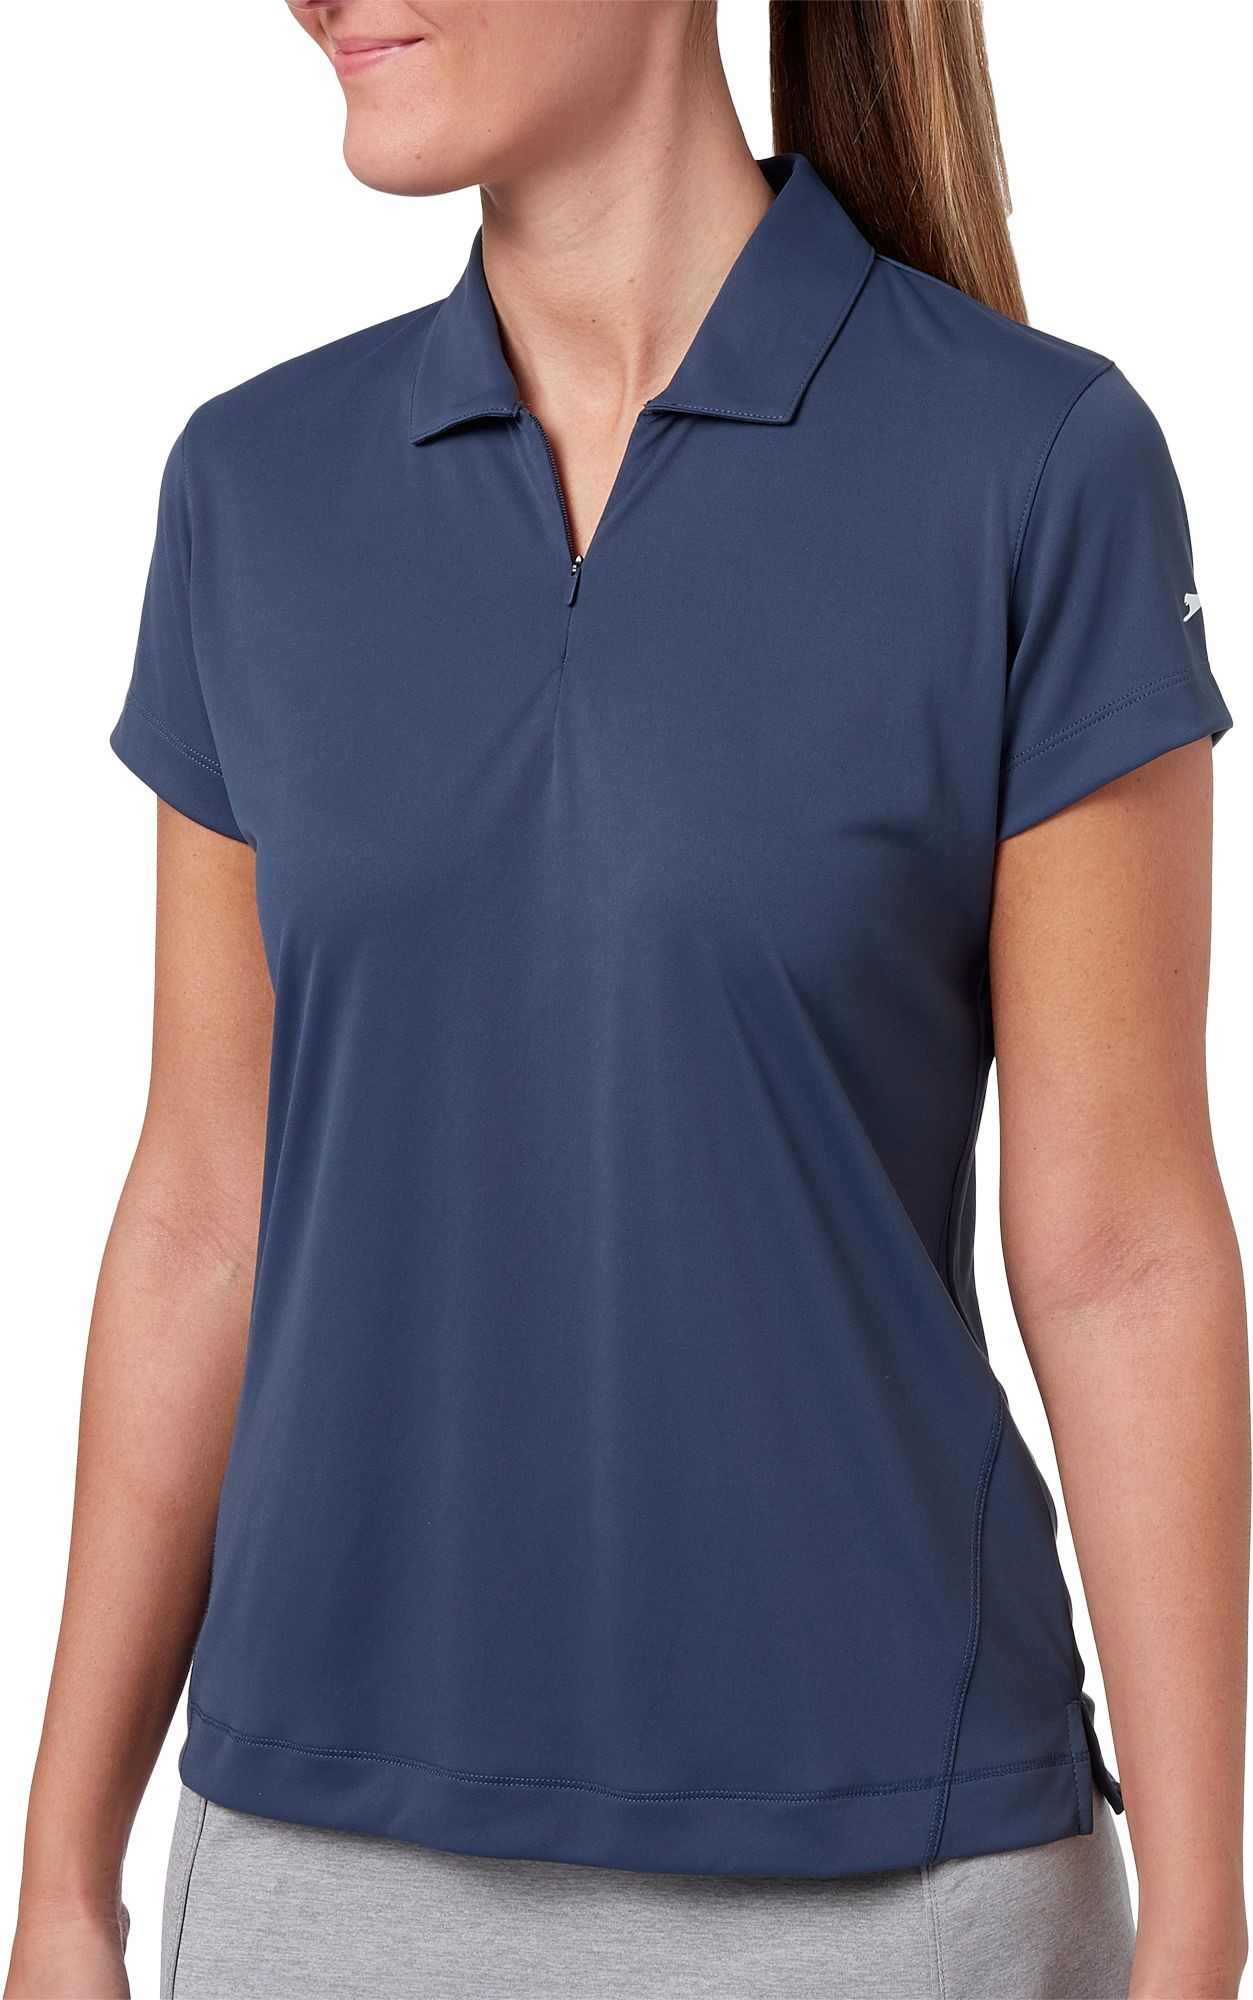 What is a Golf Shirt - Slazenger Women's Sleeveless Golf Polo